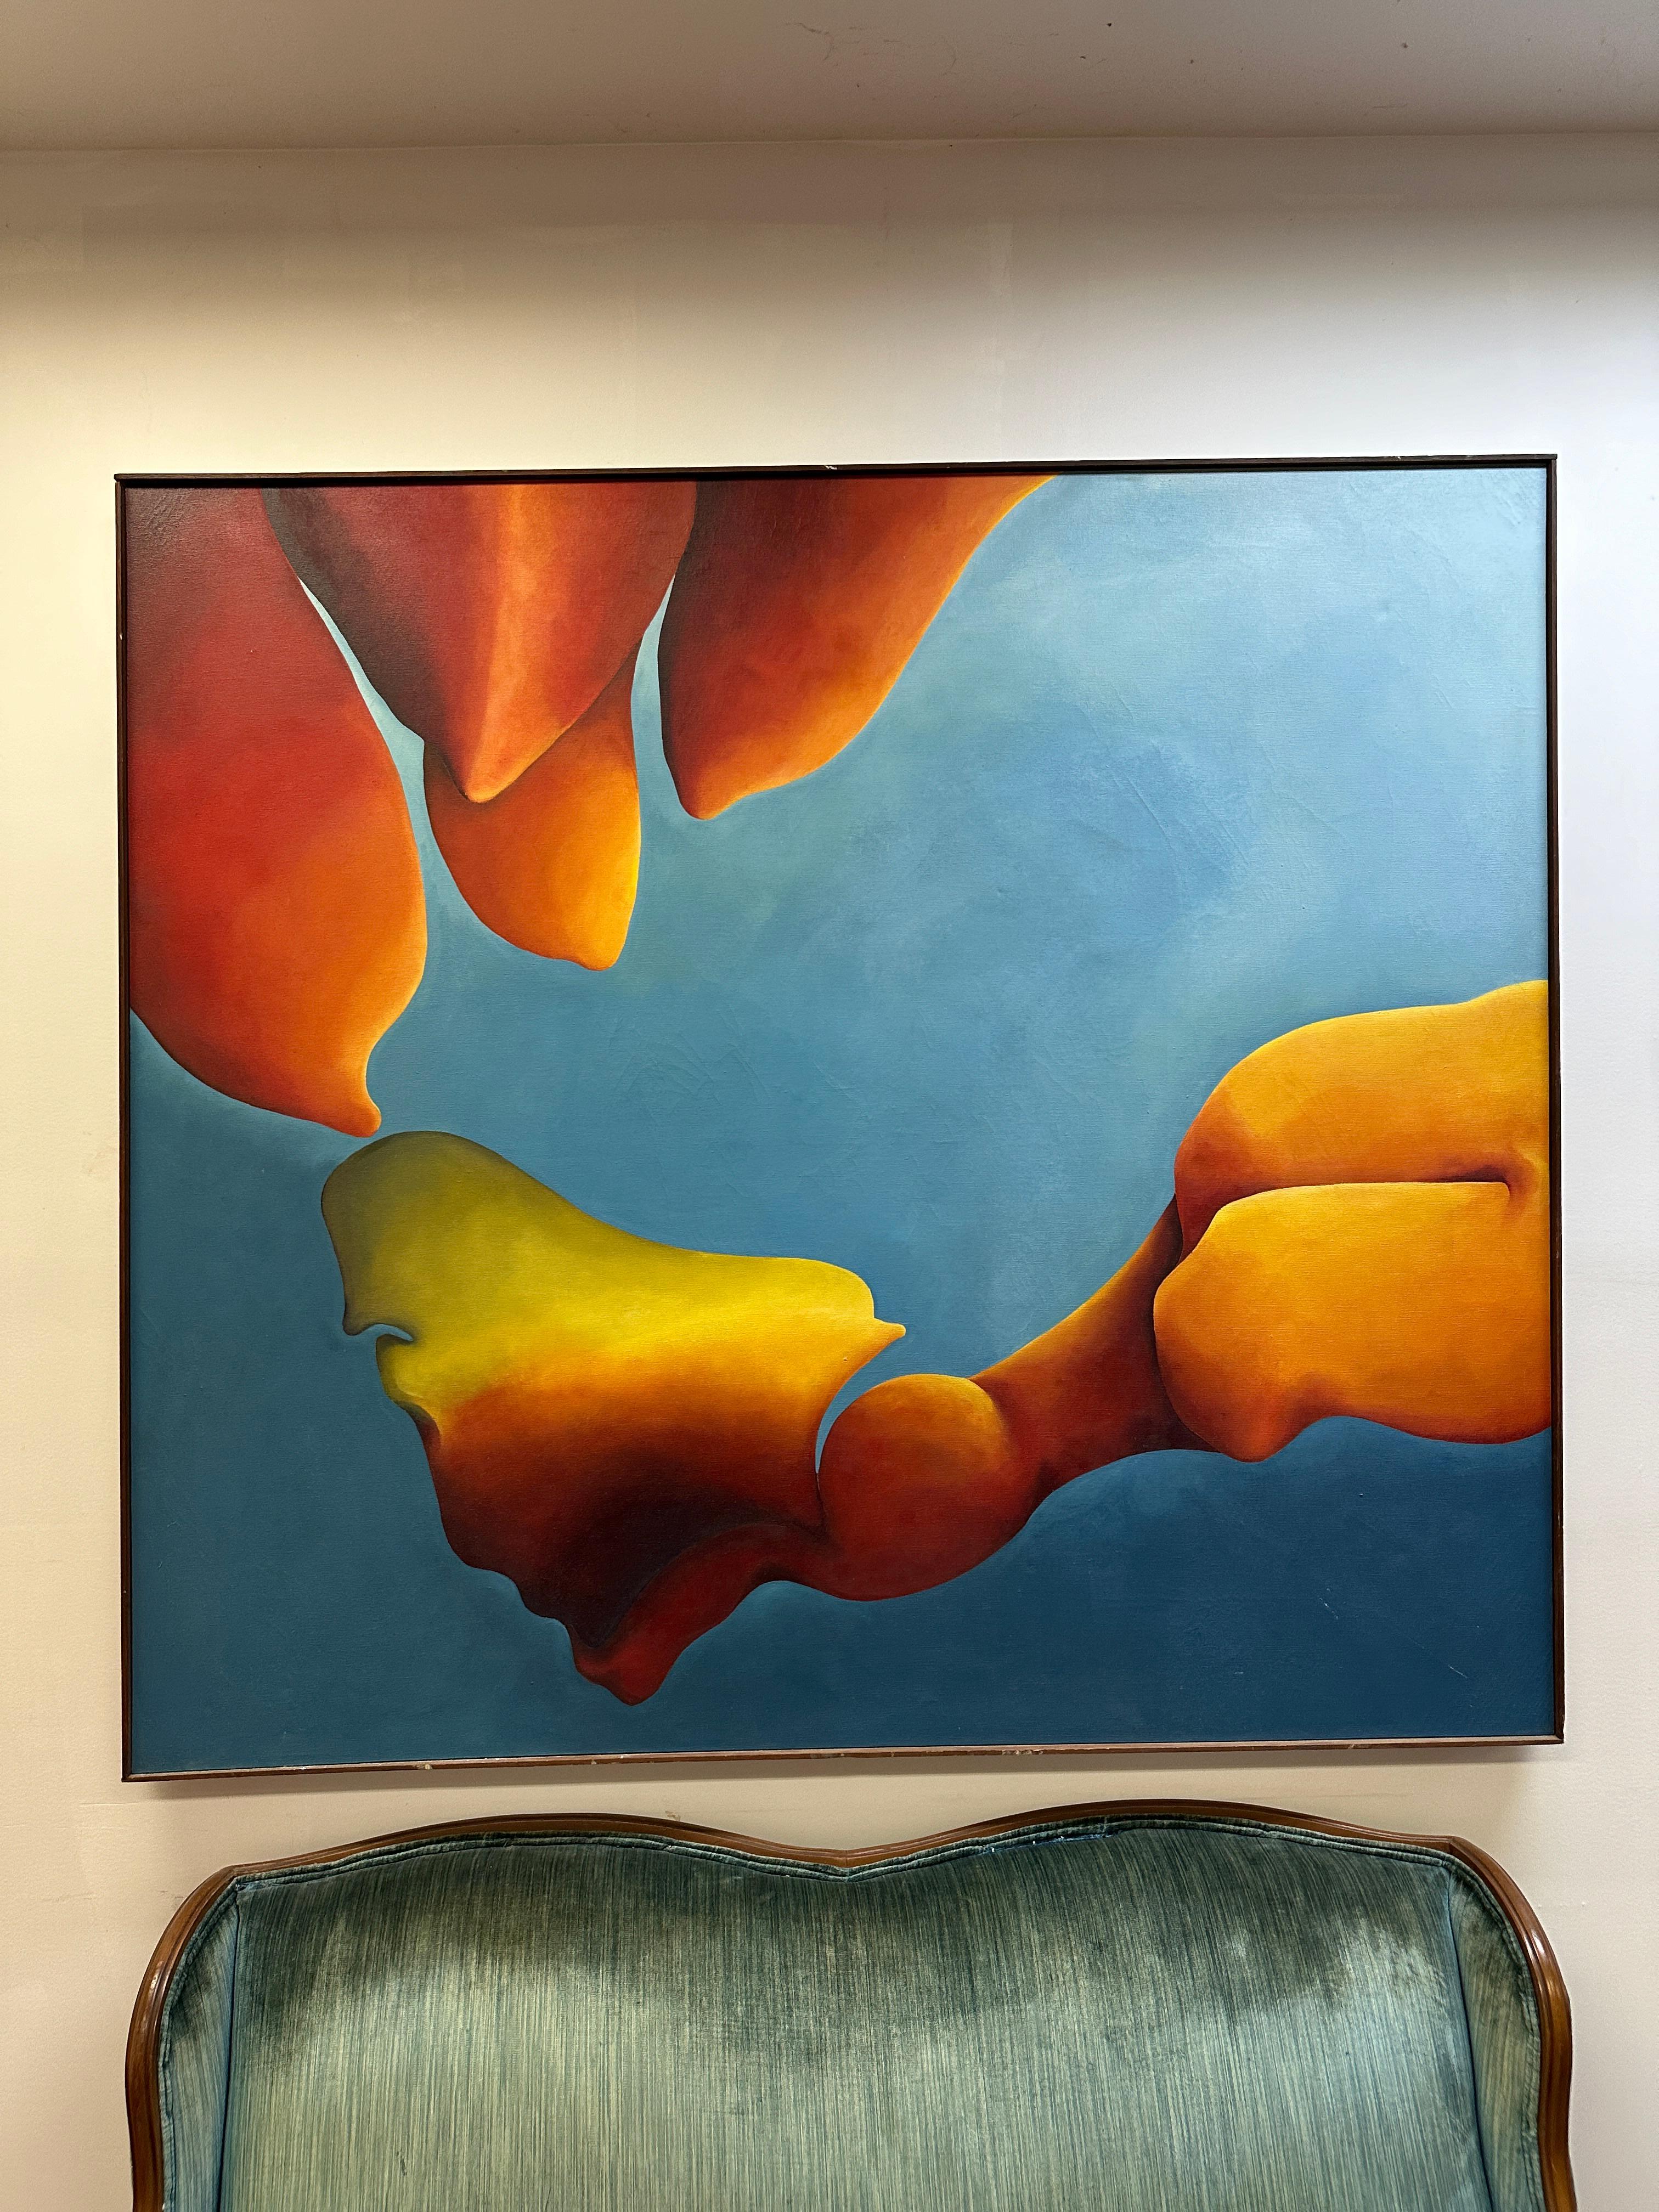 Il s'agit d'une magnifique peinture abstraite gestuelle à l'huile sur toile de l'artiste Gloria Faye de Bethlehem, Pennsylvanie. Cette œuvre mesure 54,25